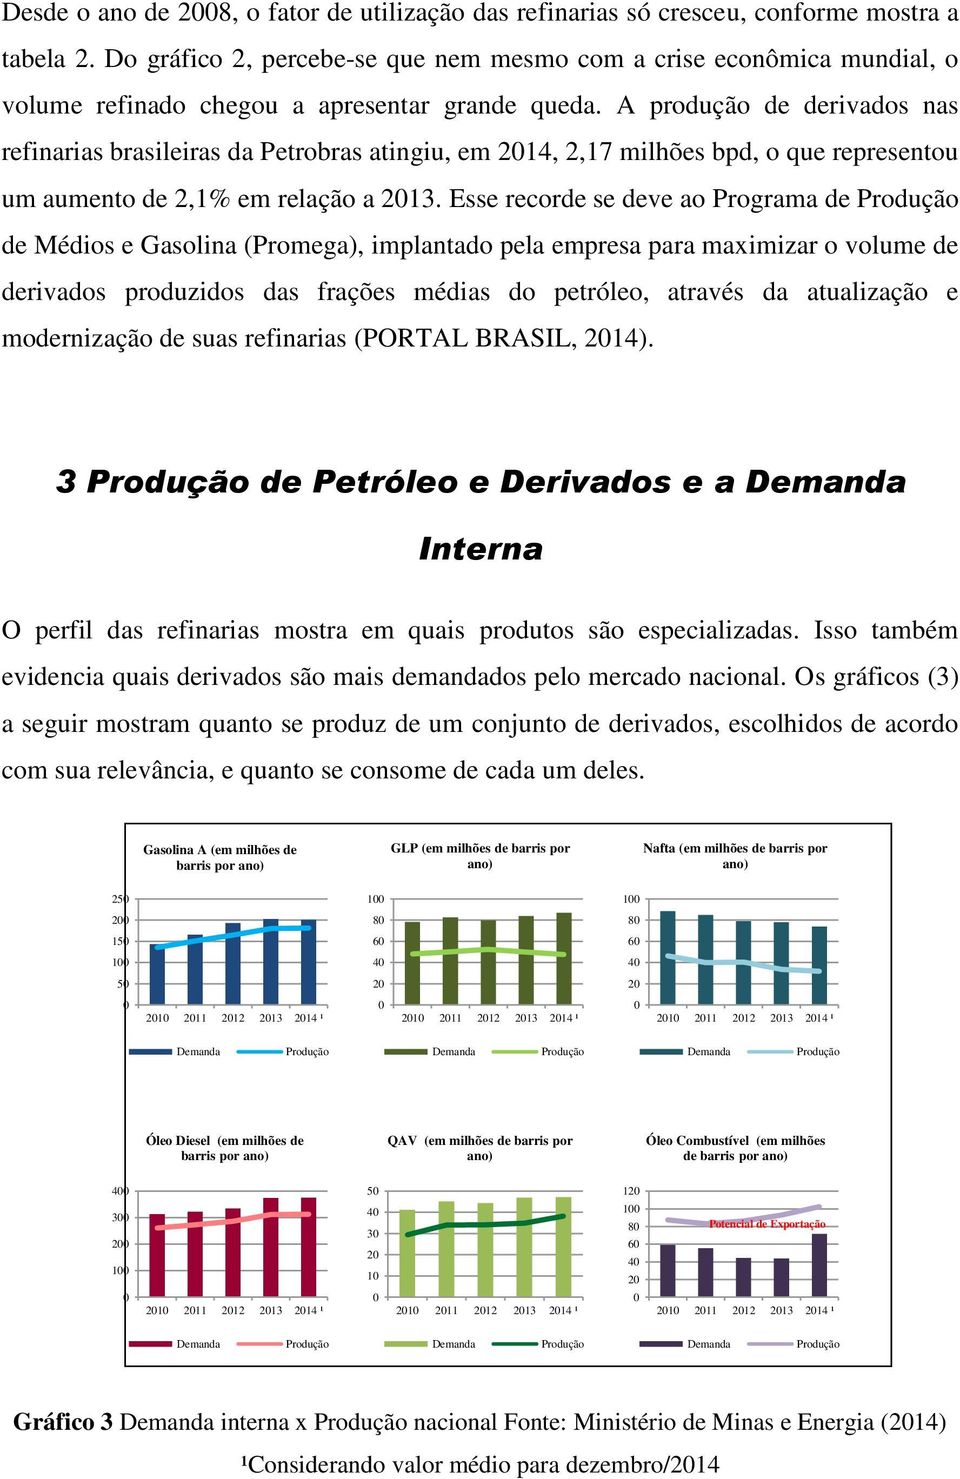 A produção de derivados nas refinarias brasileiras da Petrobras atingiu, em 214, 2,17 milhões bpd, o que representou um aumento de 2,1% em relação a 213.